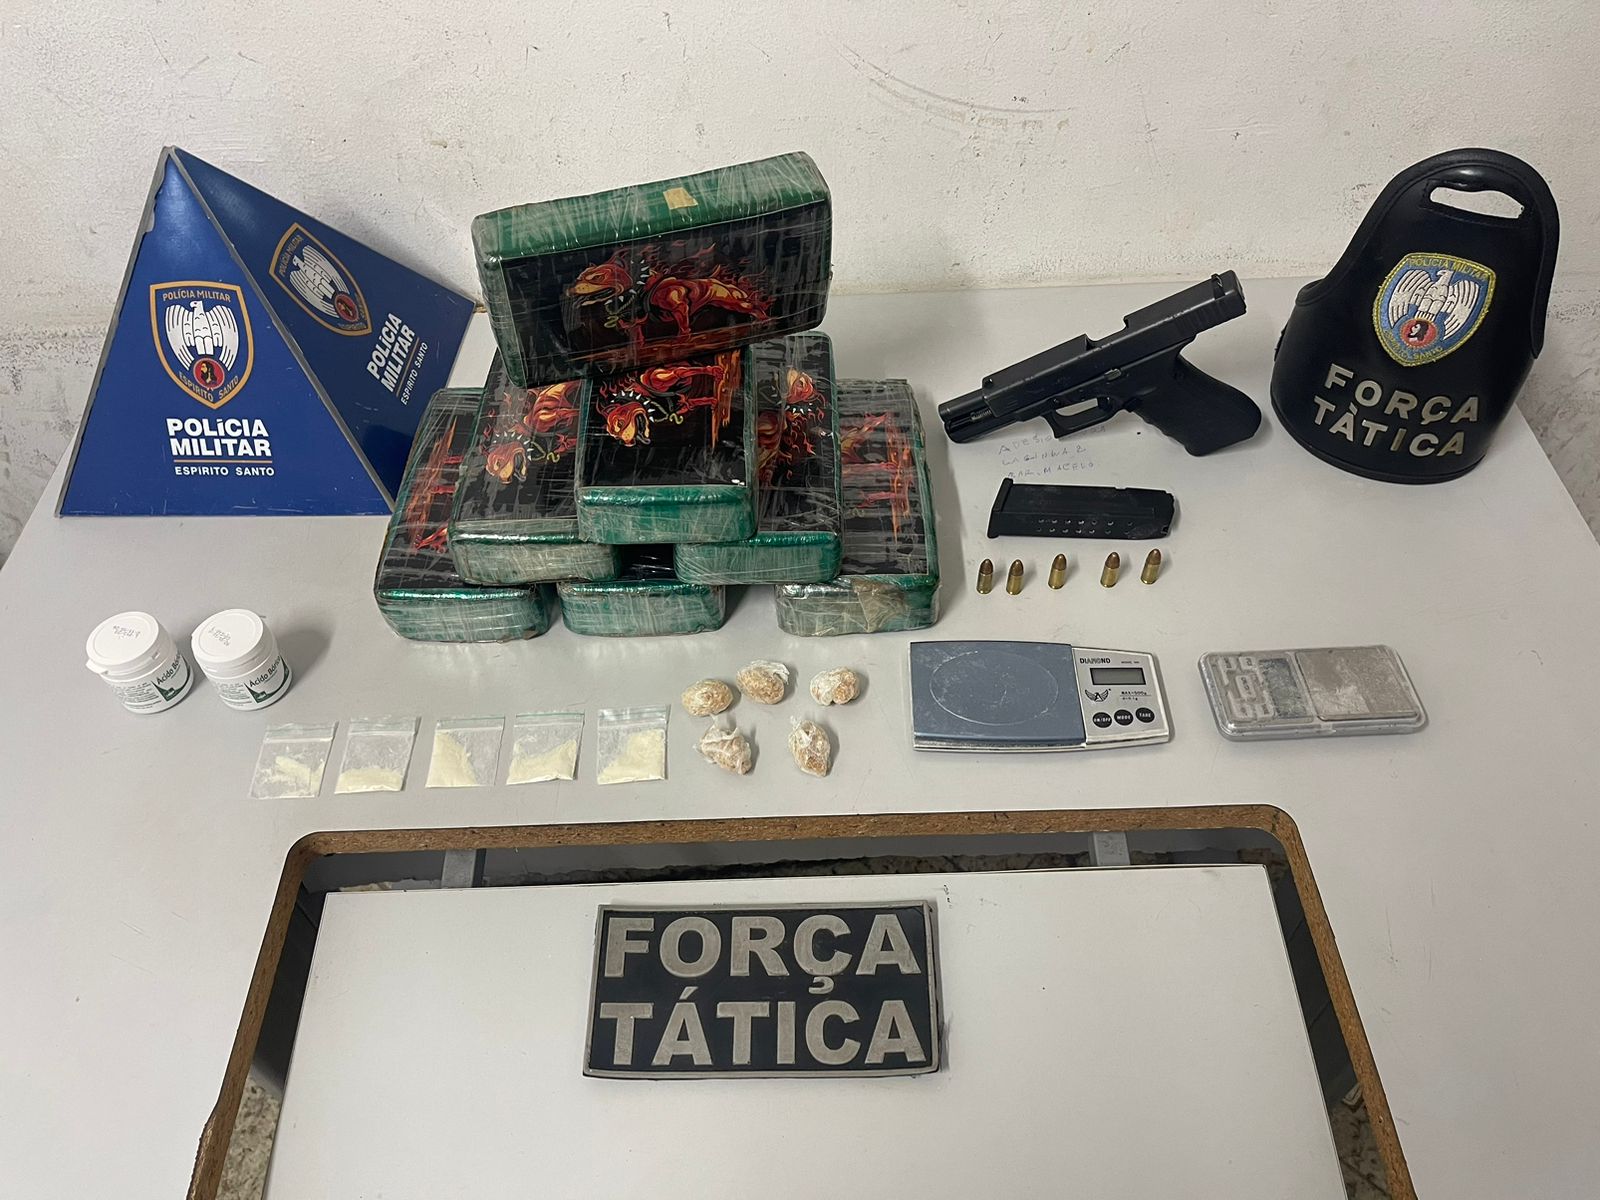 Além da droga, policiais encontraram também porções de cocaína, arma e munições com dupla detida, e também uma moto utilizada para entrega dos entorpecentes